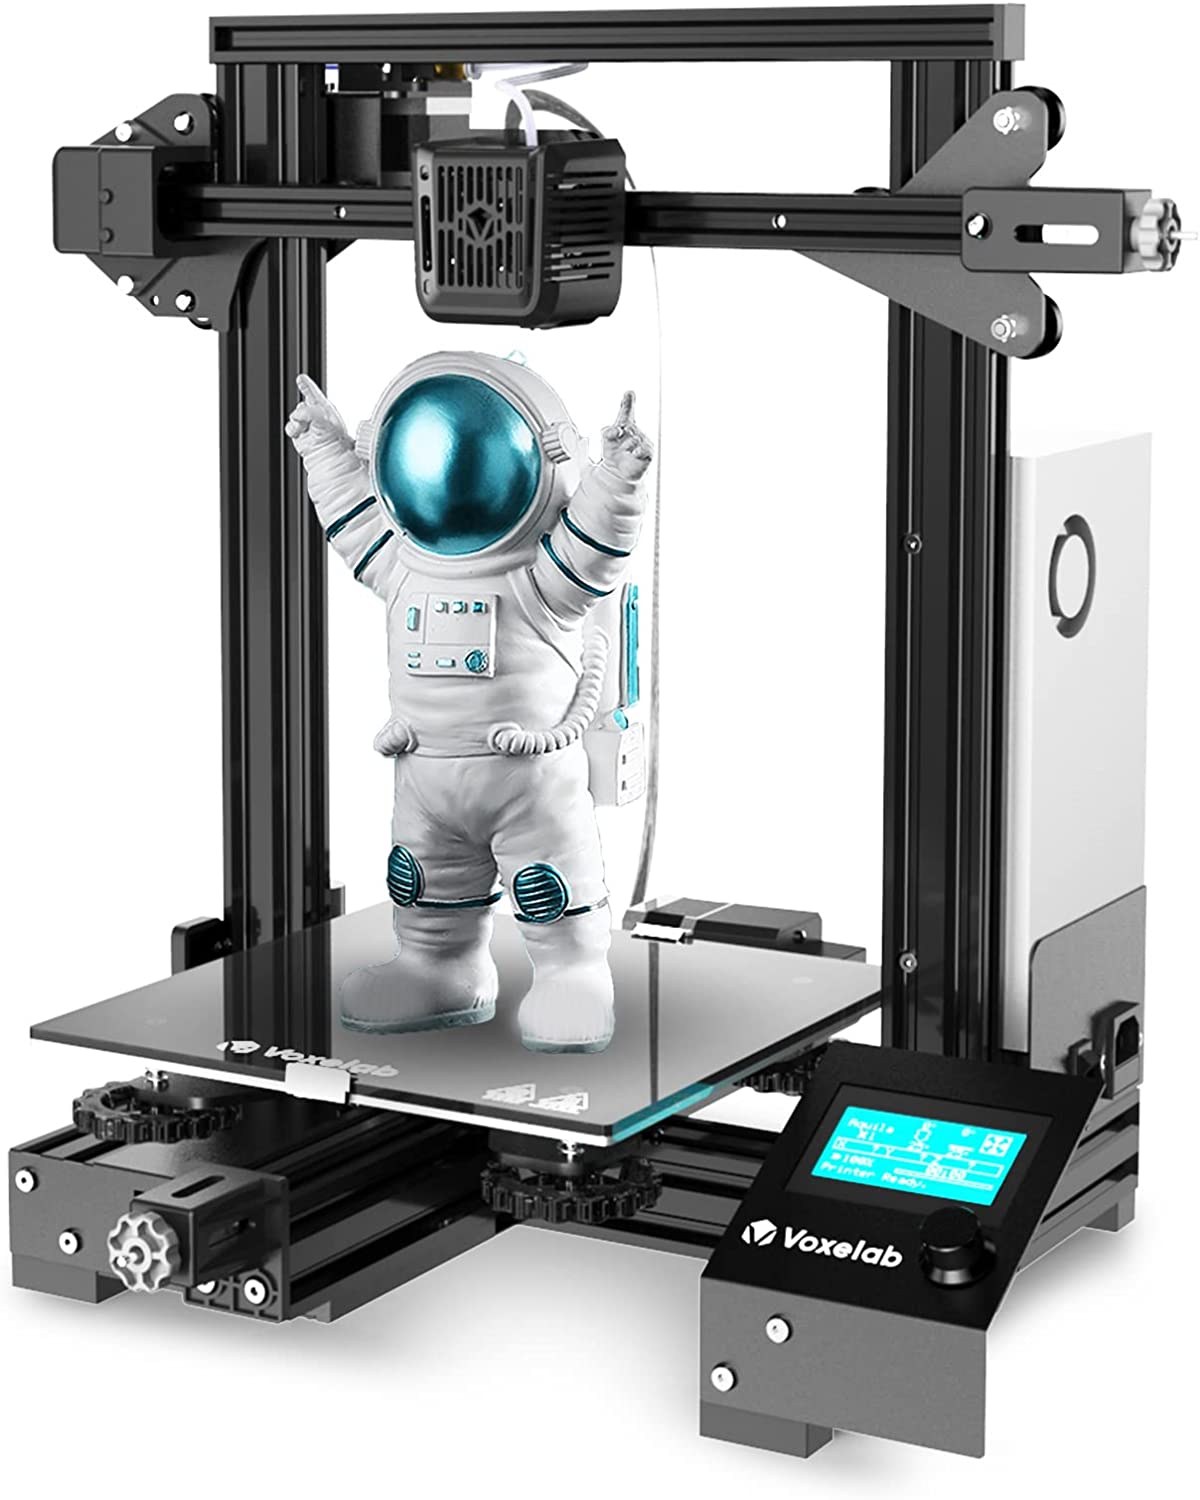 Comment choisir un logiciel de modélisation 3D pour une utilisation avec une imprimante 3D ?